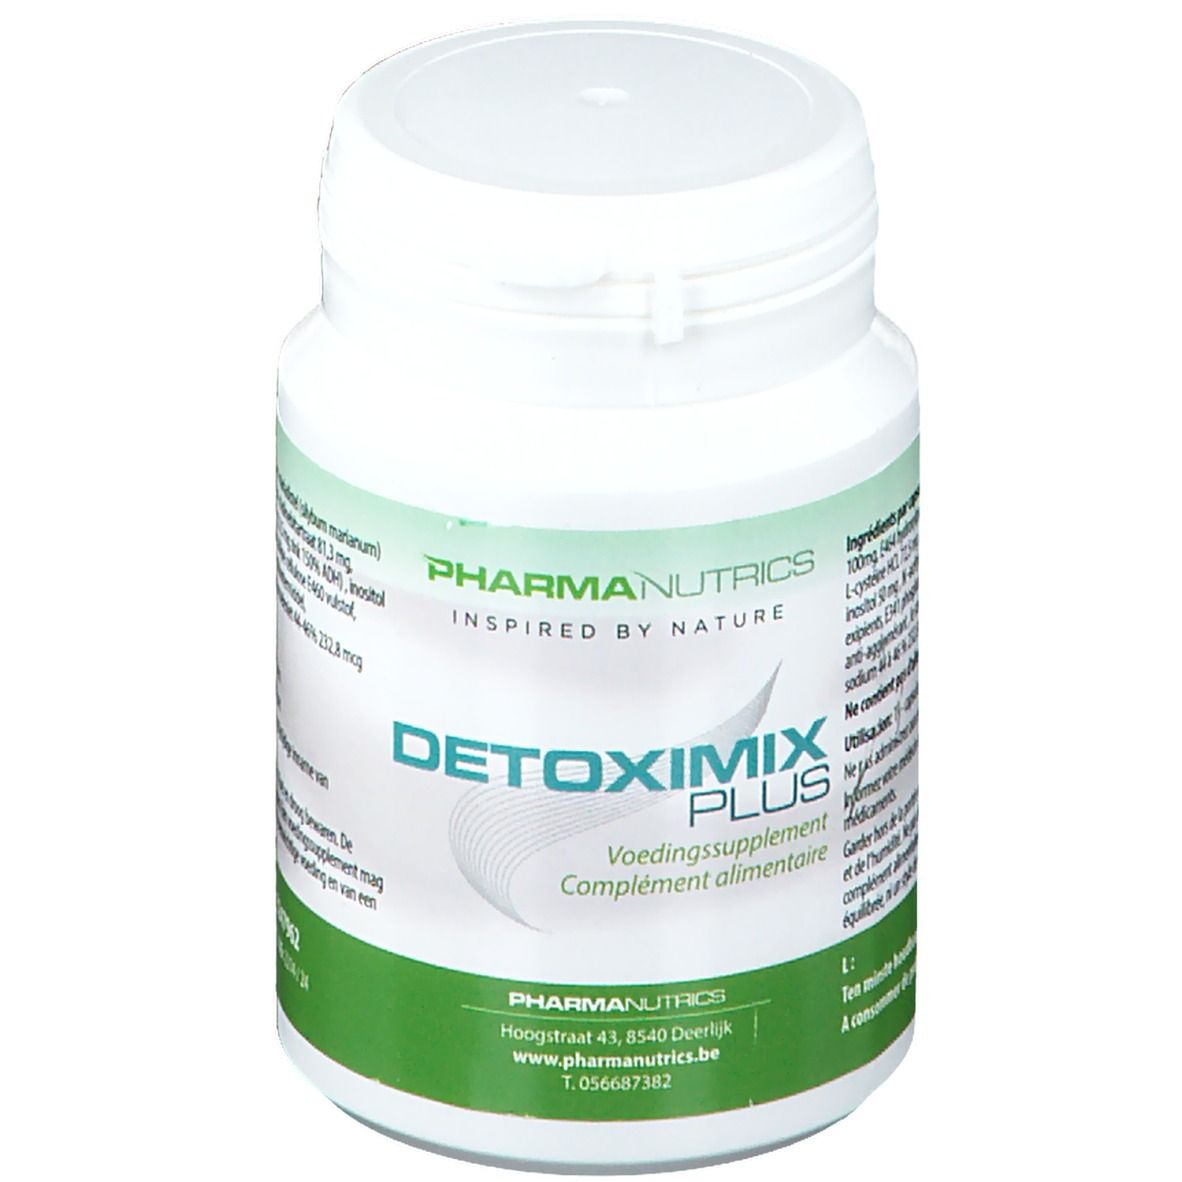 PharmaNutrics Detoximix Plus